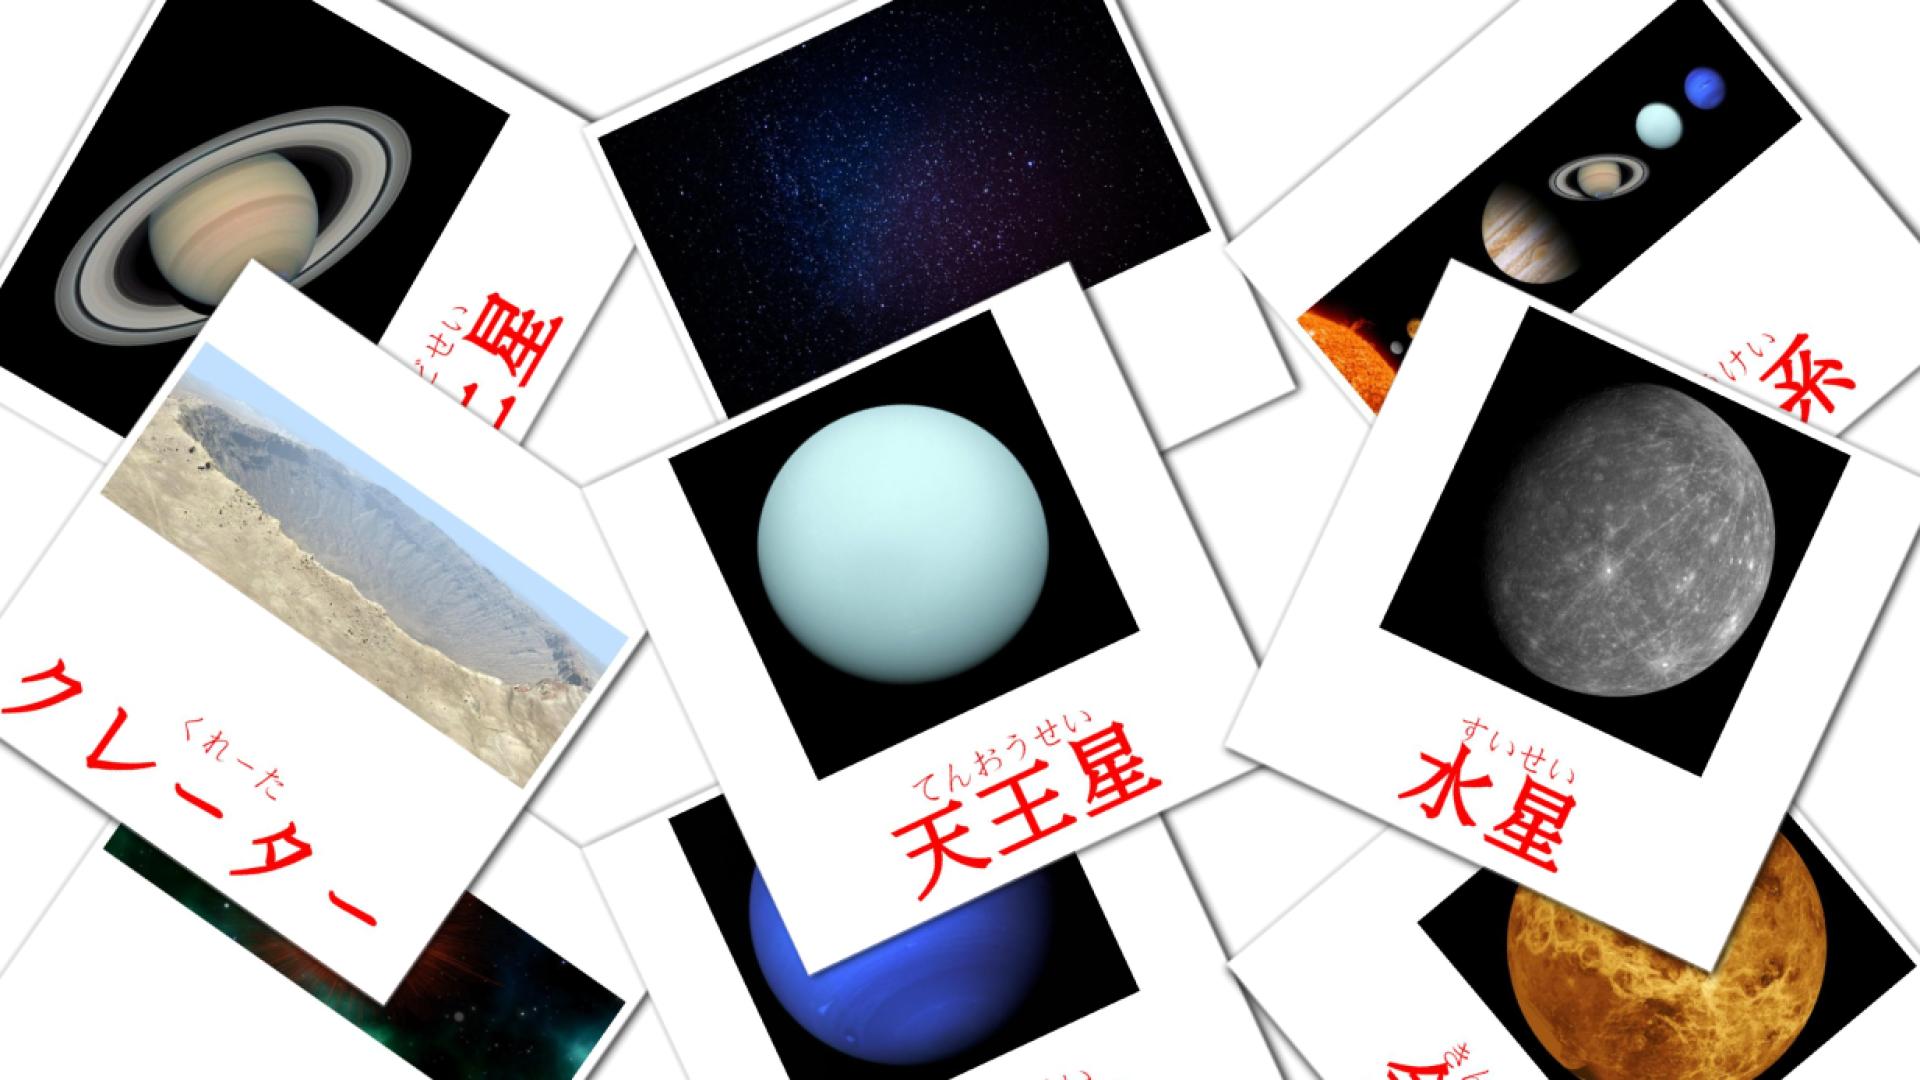 21 太陽系 flashcards